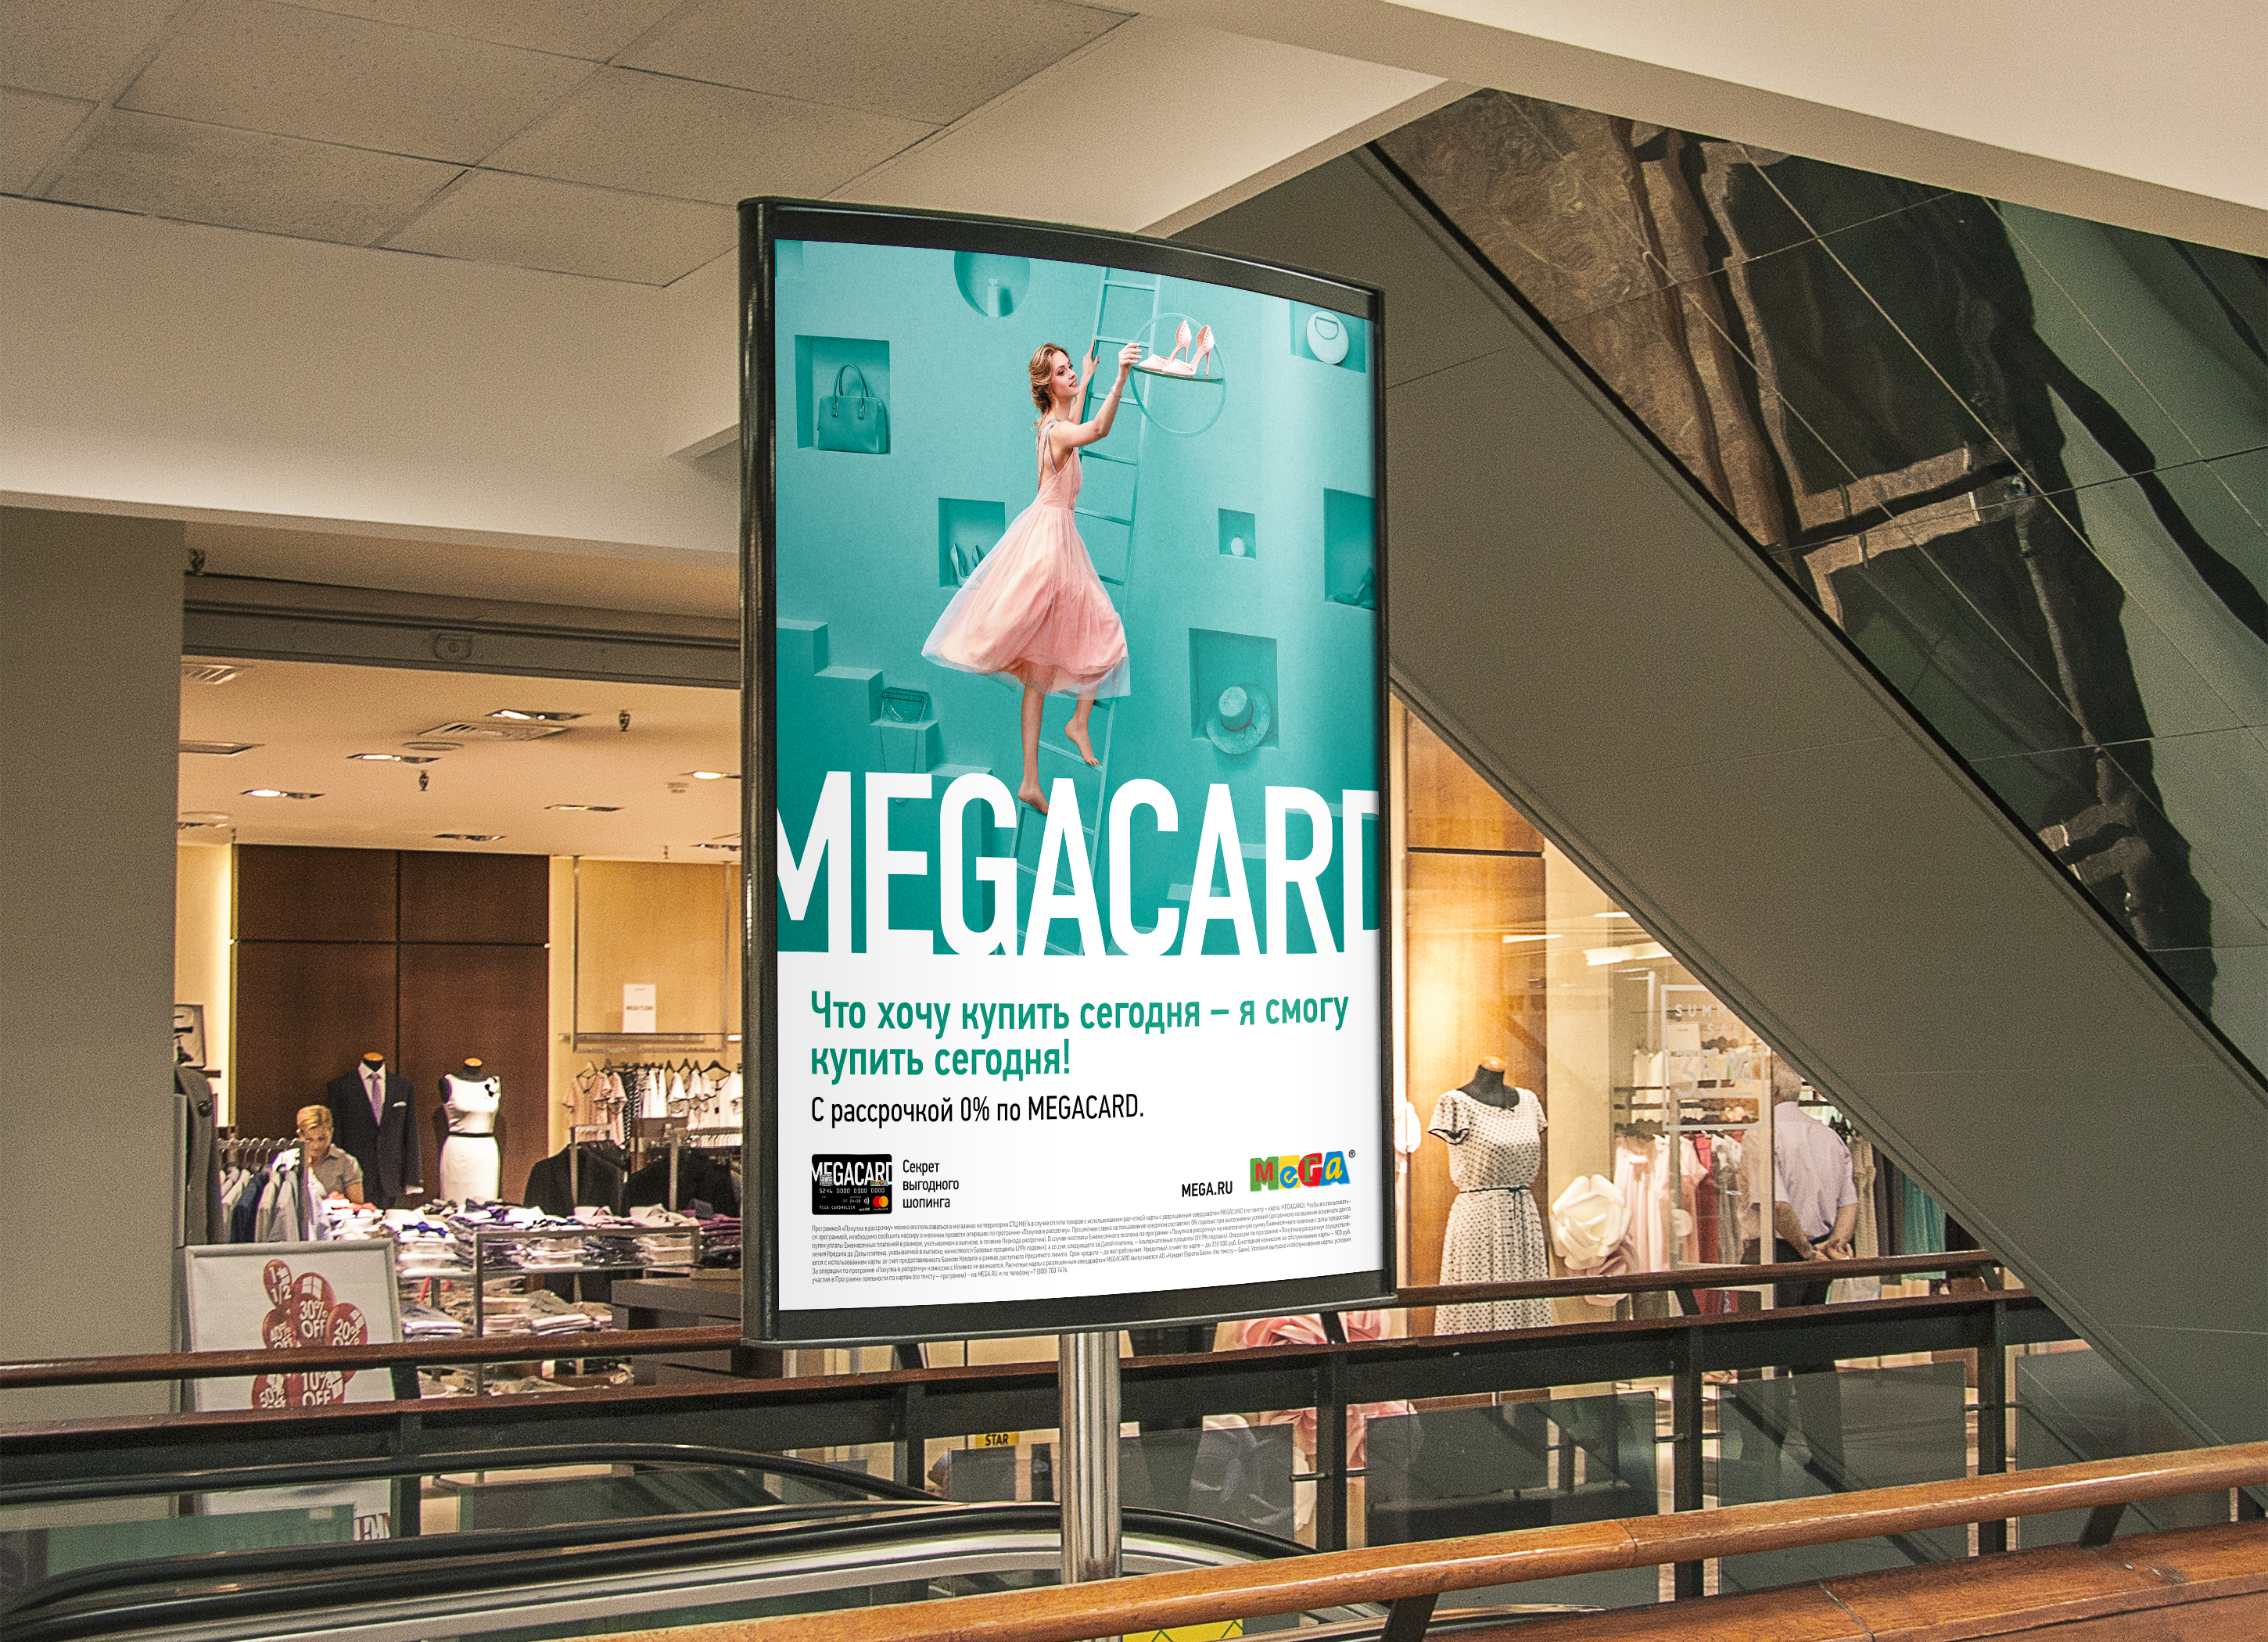 Рекламная кампания, Печатная реклама, TDI Group, MEGACARD